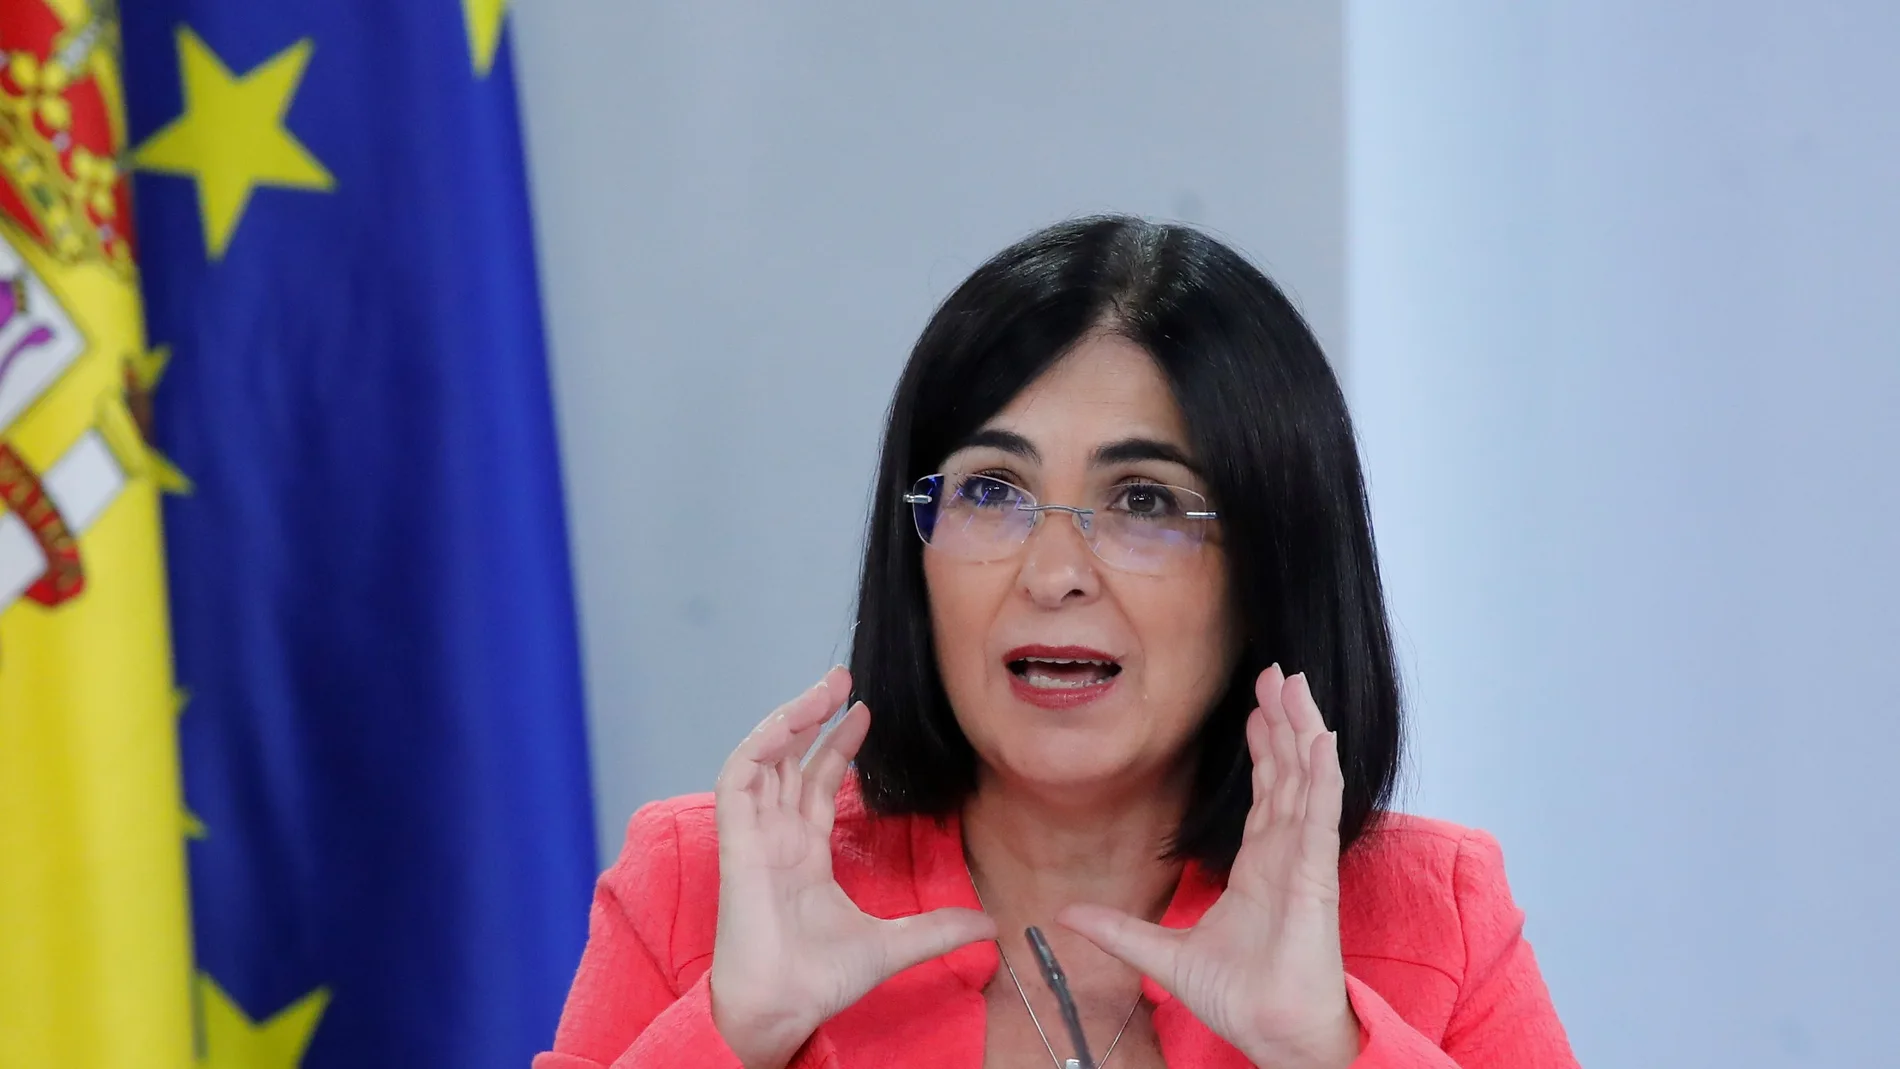 La ministra de Política Territorial, Carolina Darias, ofrece una rueda de prensa después de la reunión del Consejo de Ministros este jueves en el palacio de la Moncloa en Madrid